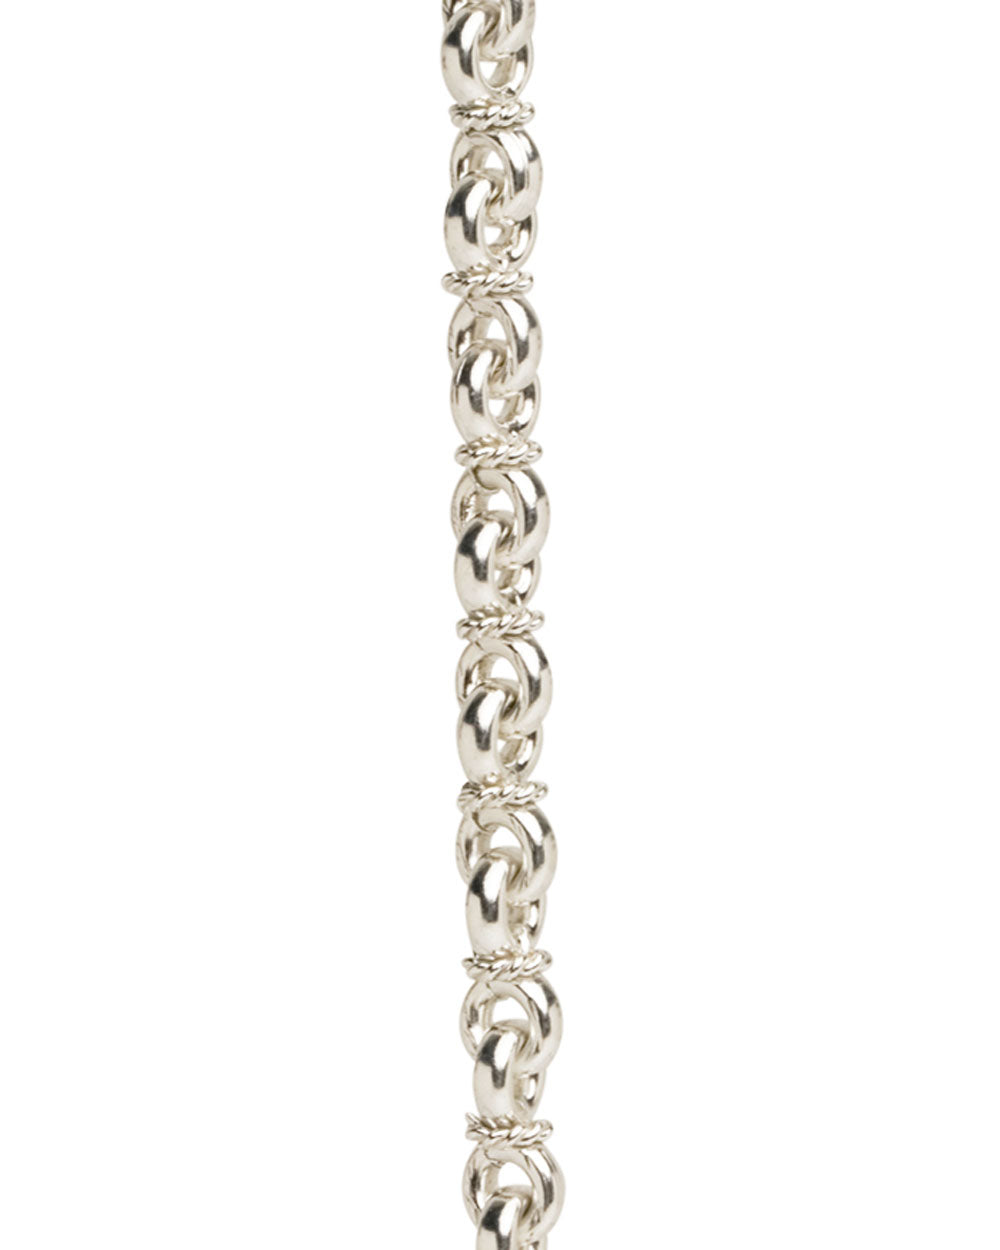 Sterling Silver Fancy Chain Bracelet